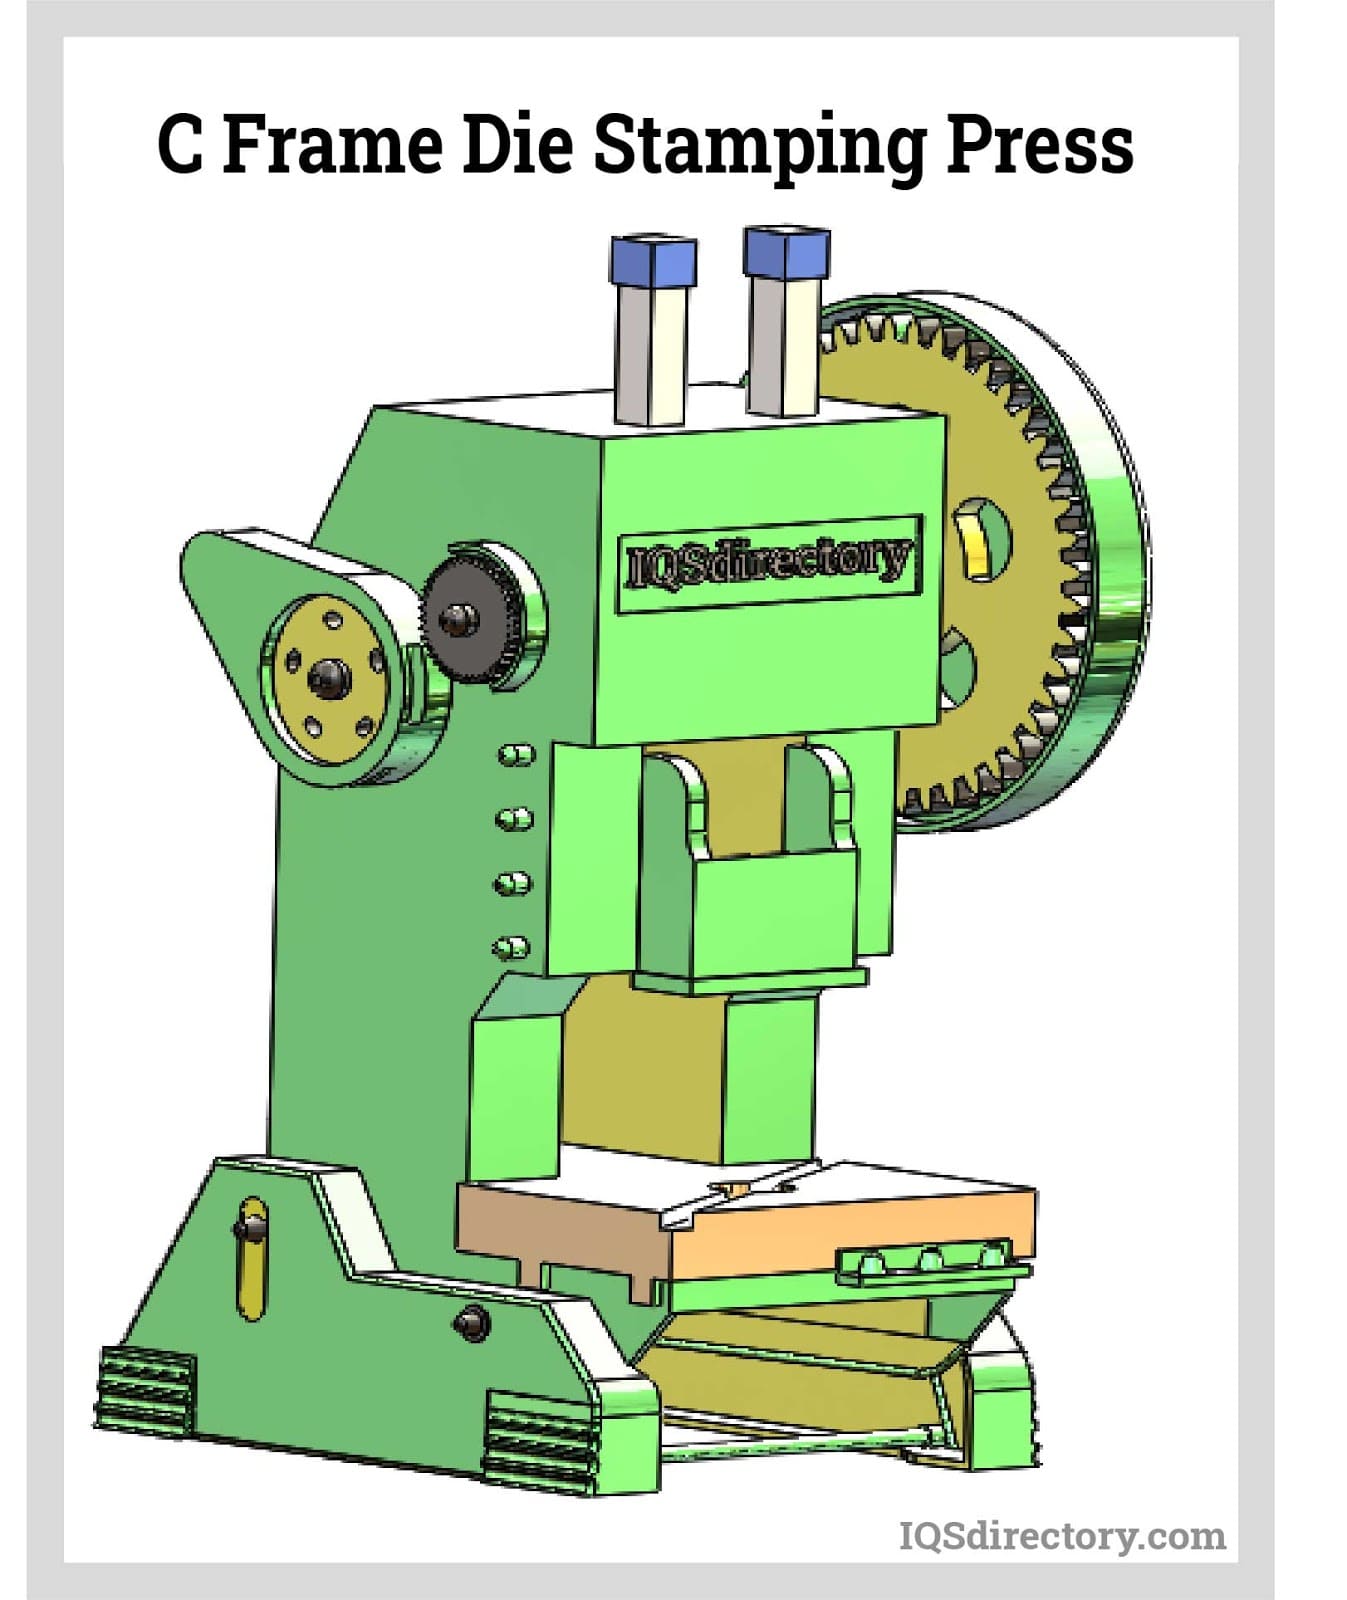 C Frame Die Stamping Press